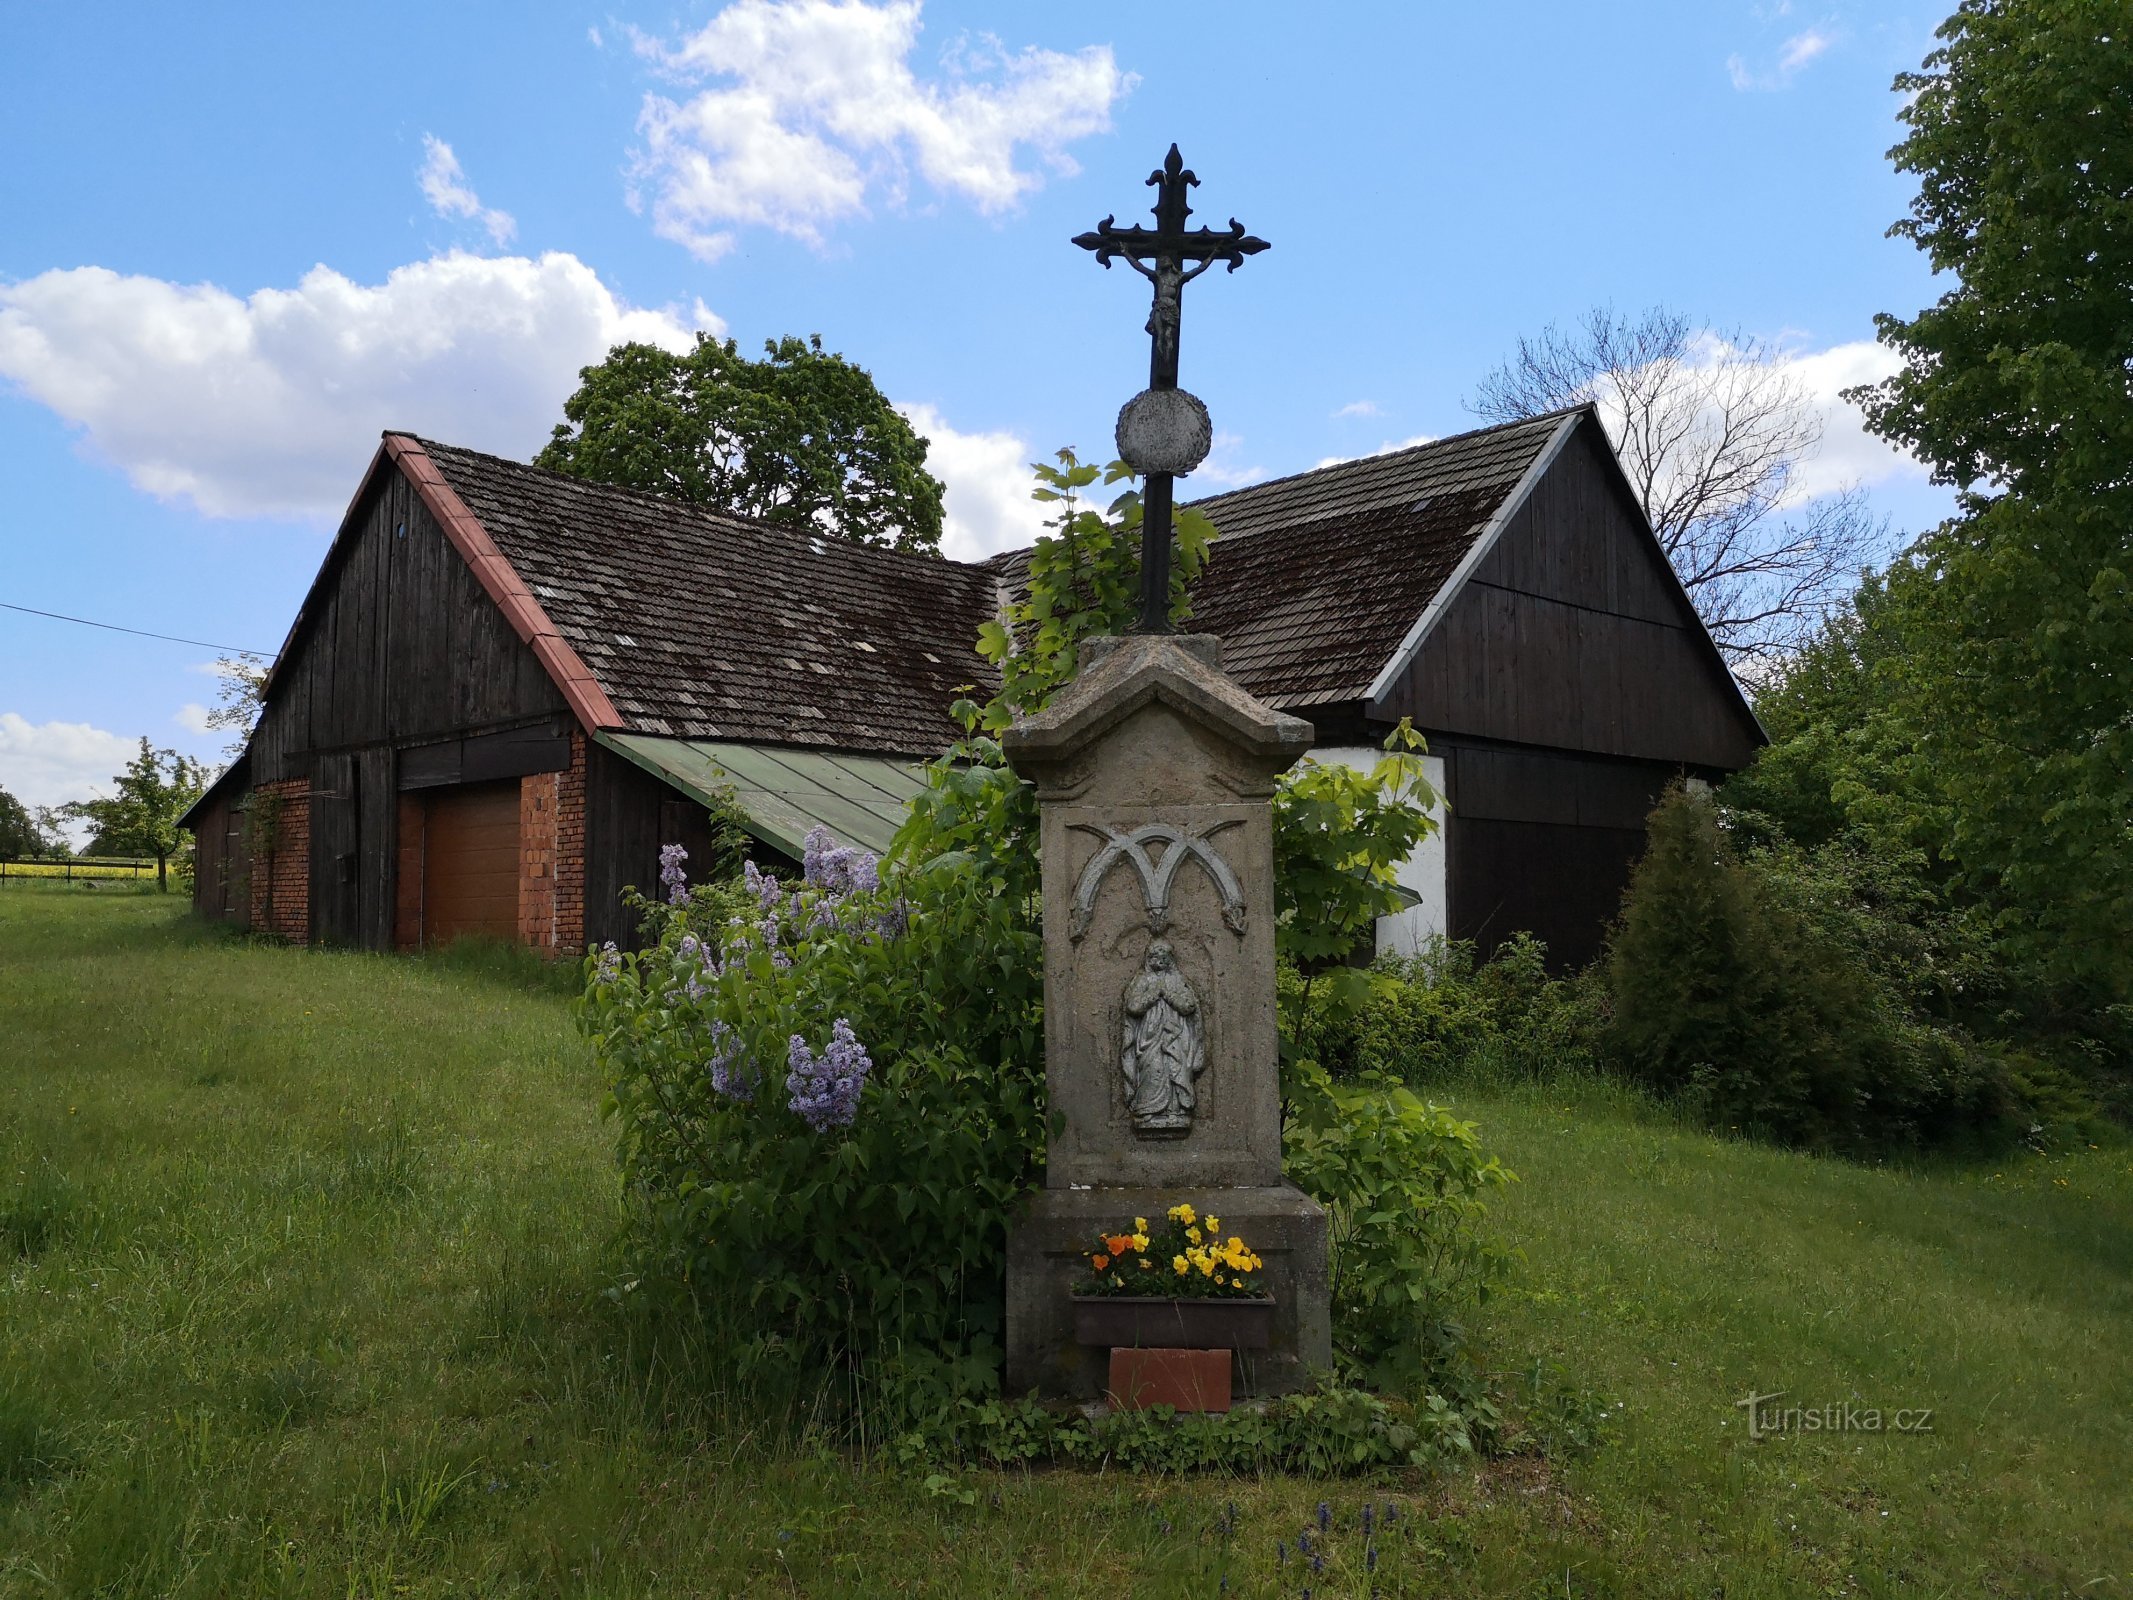 Cross in the village of Studénka (Horní Radechová)